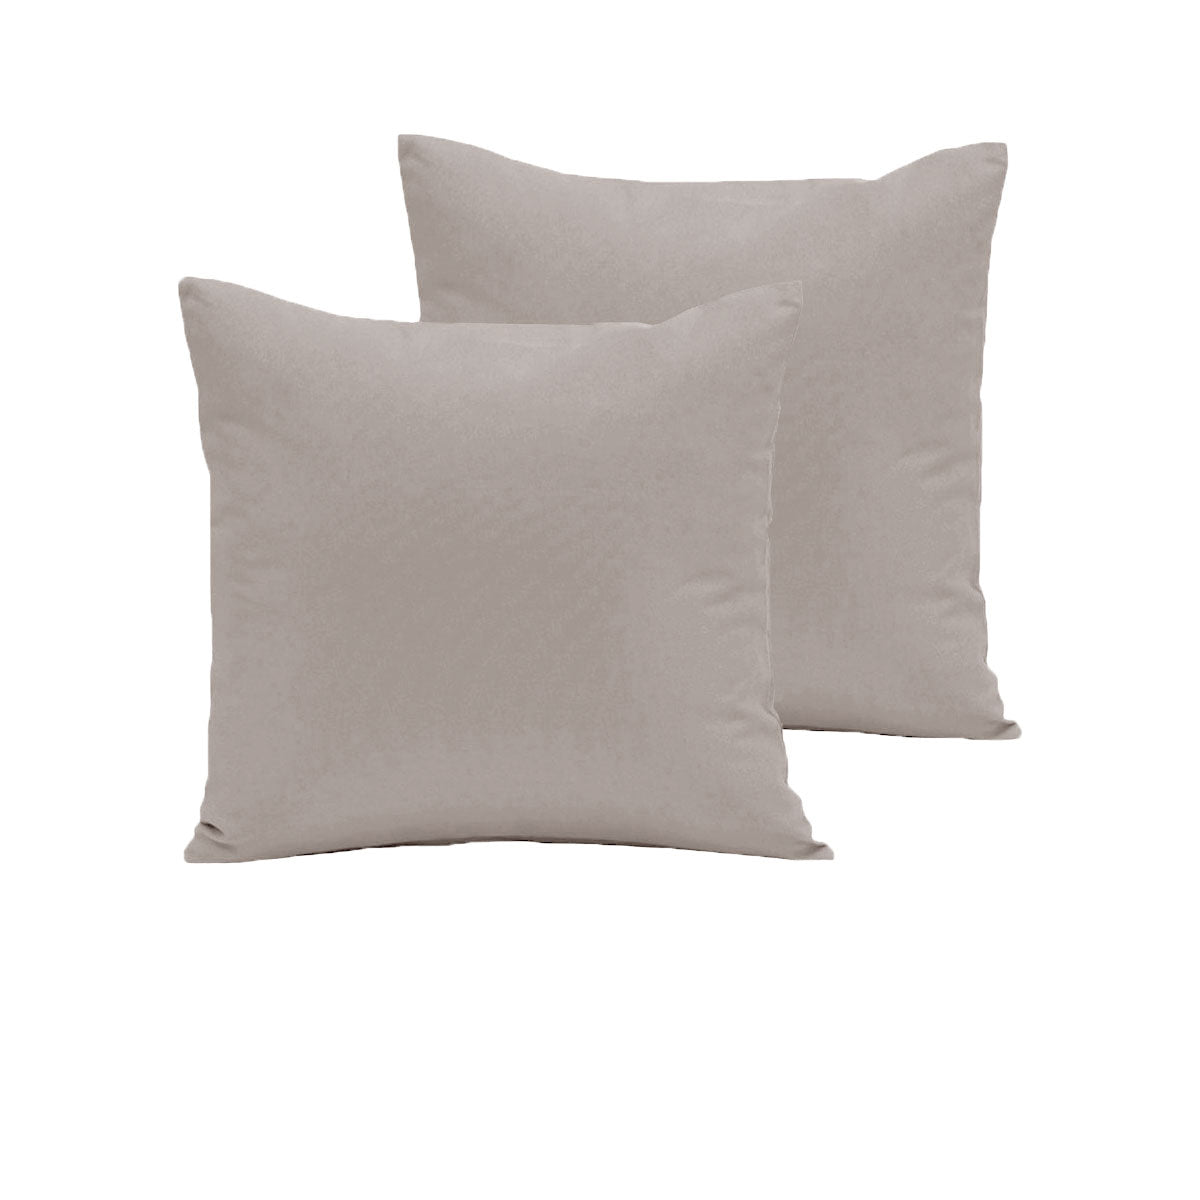 Pair of  280TC Polyester Cotton European Pillowcases Latte